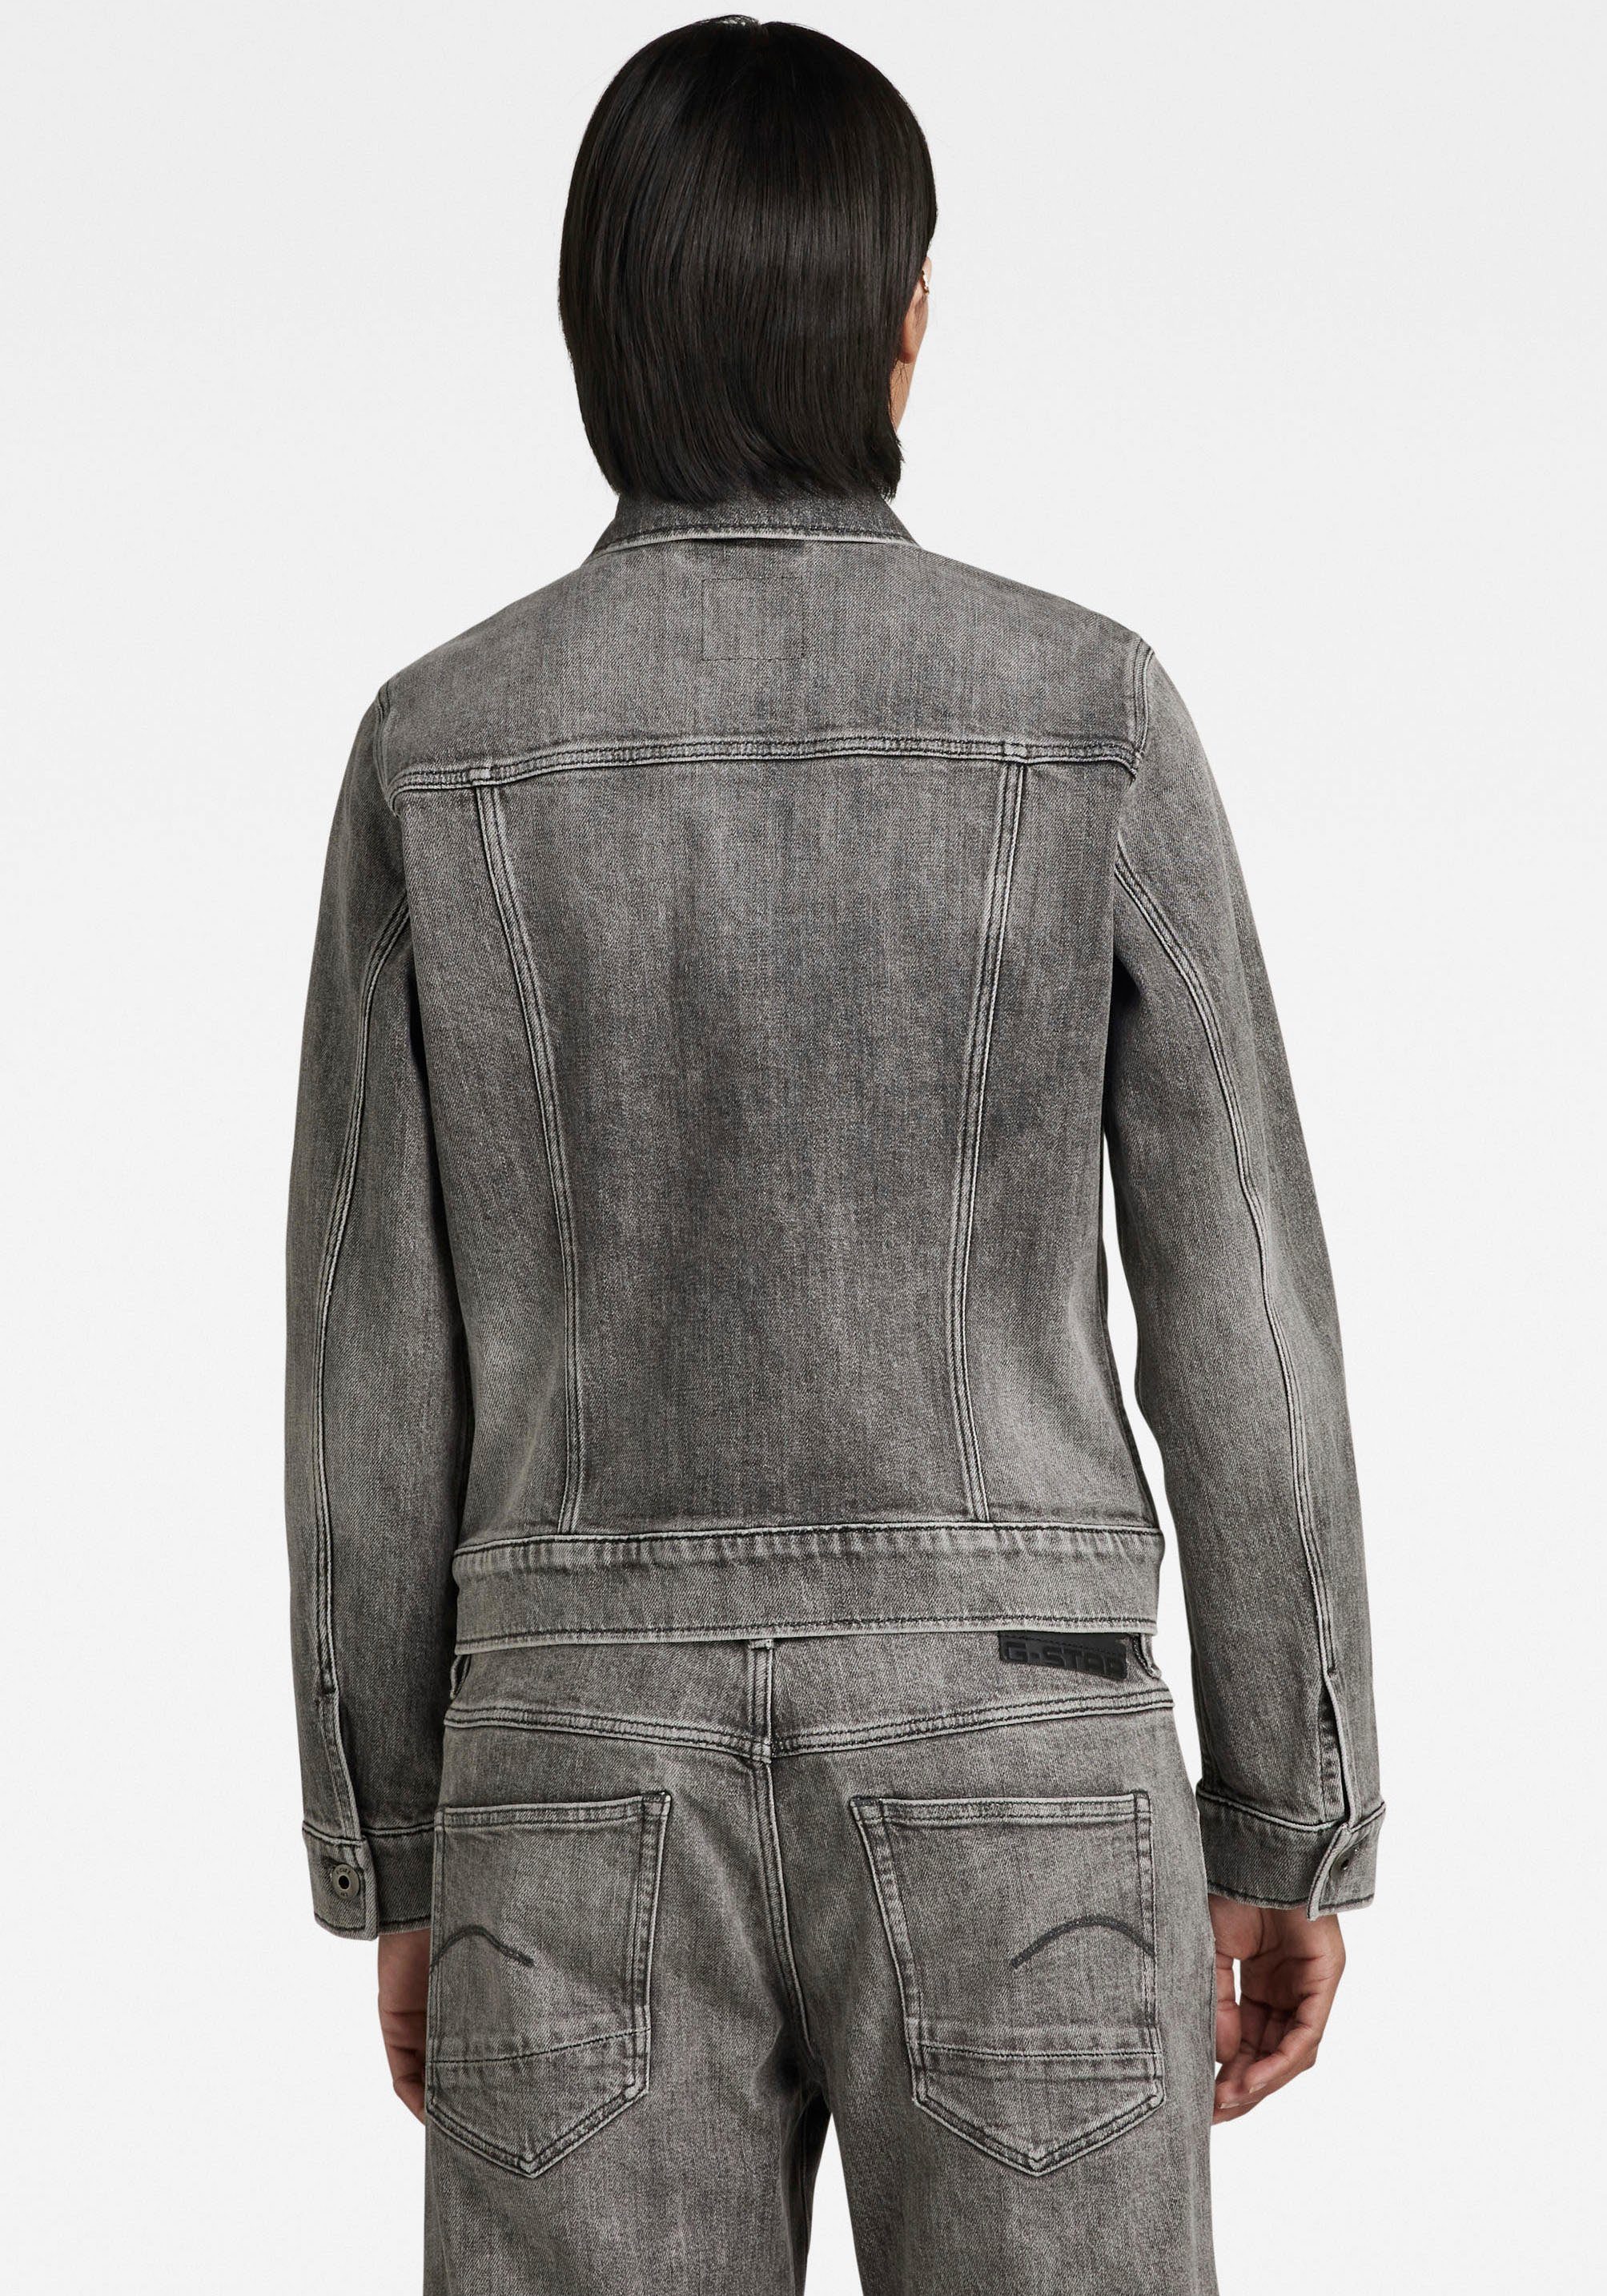 carbon Arc aufgesetzten Jeansjacke G-Star Pattentaschen Ösenknöpfen faded mit jacket 3D mit RAW